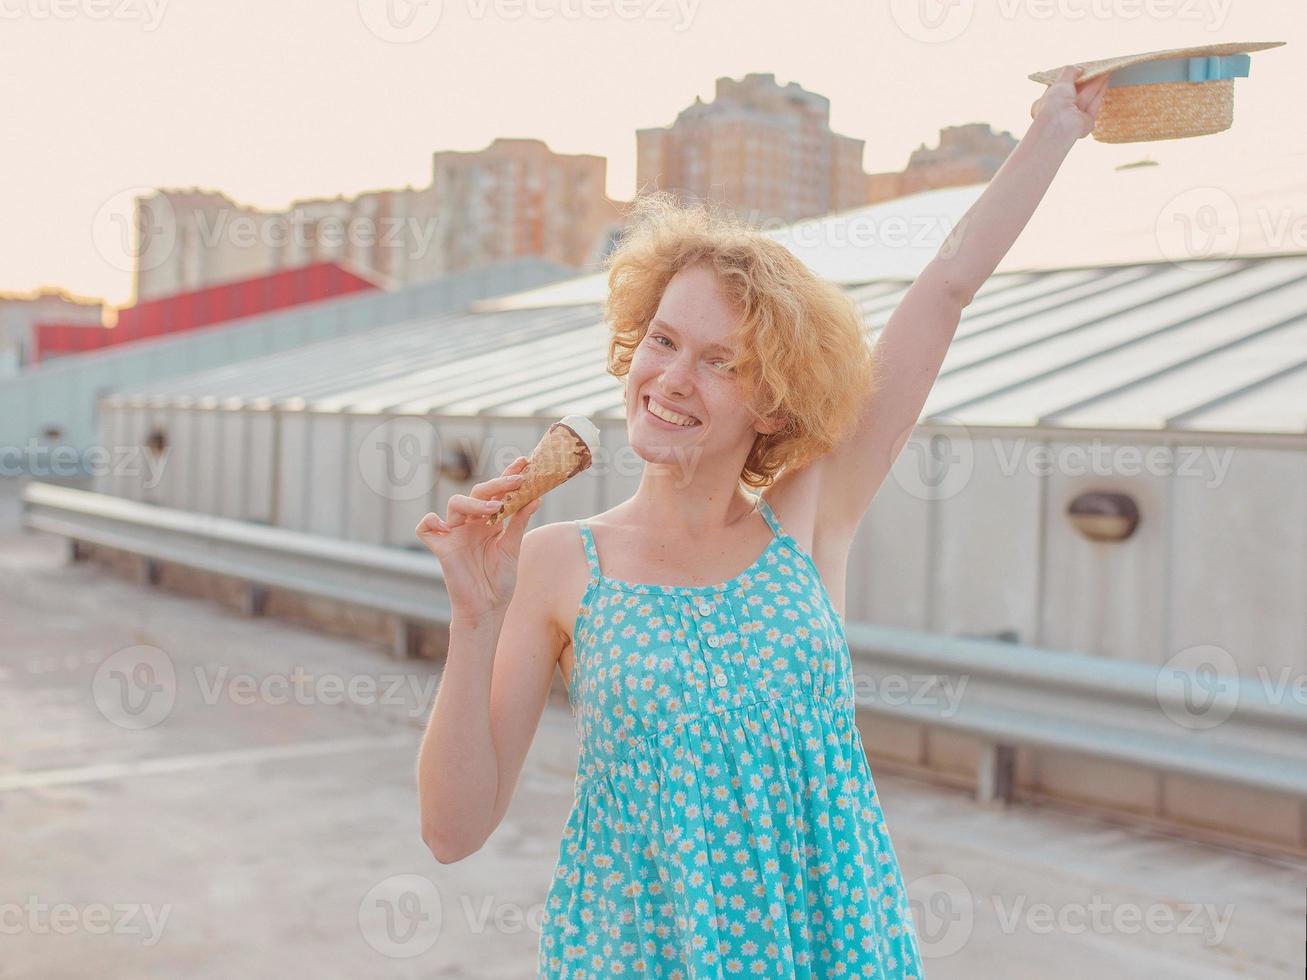 giovane donna rossa riccia allegra felice in cappello di paglia, prendisole blu che mangia il gelato sul tetto del grattacielo. divertimento, stile di vita, urbano, moderno, tetto, città, estate, moda, concetto giovanile foto